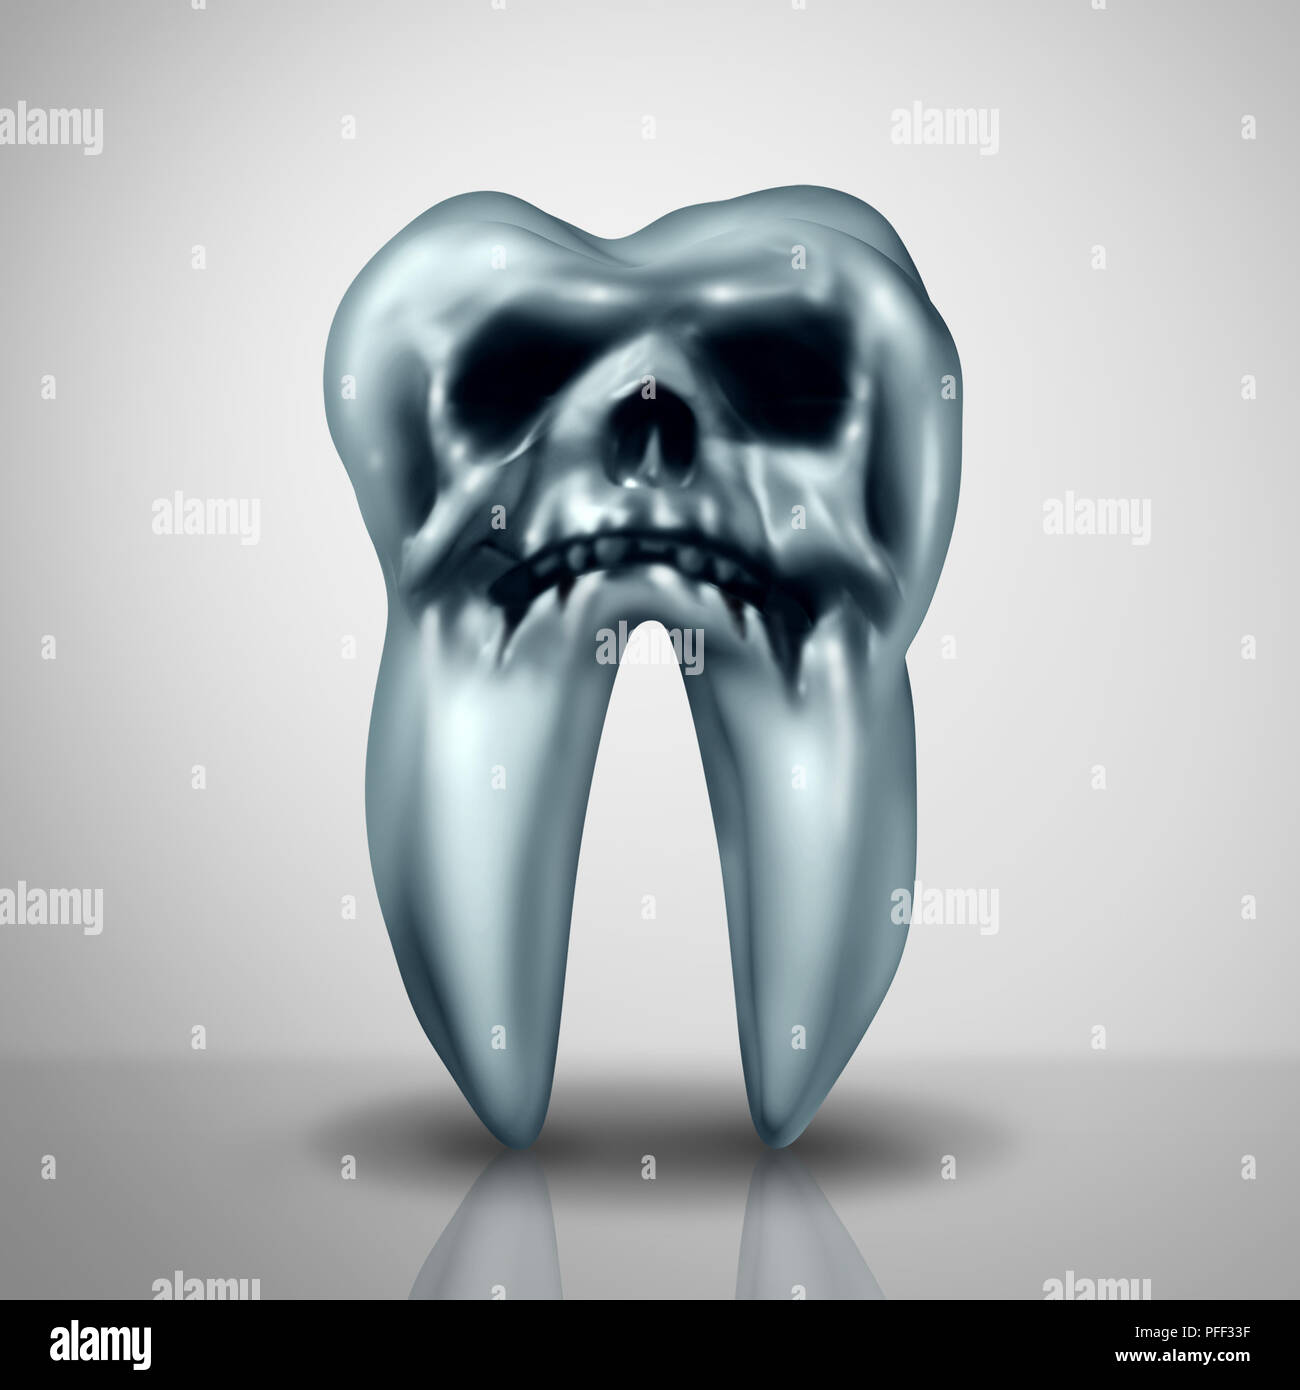 Karies Krankheit Gefahr, als ein Hohlraum oder Hohlräume Symbol angezeigt, um das Risiko von Zahn Anatomie in Verfall durch Bakterien und Säuren als Tod Schädel. Stockfoto